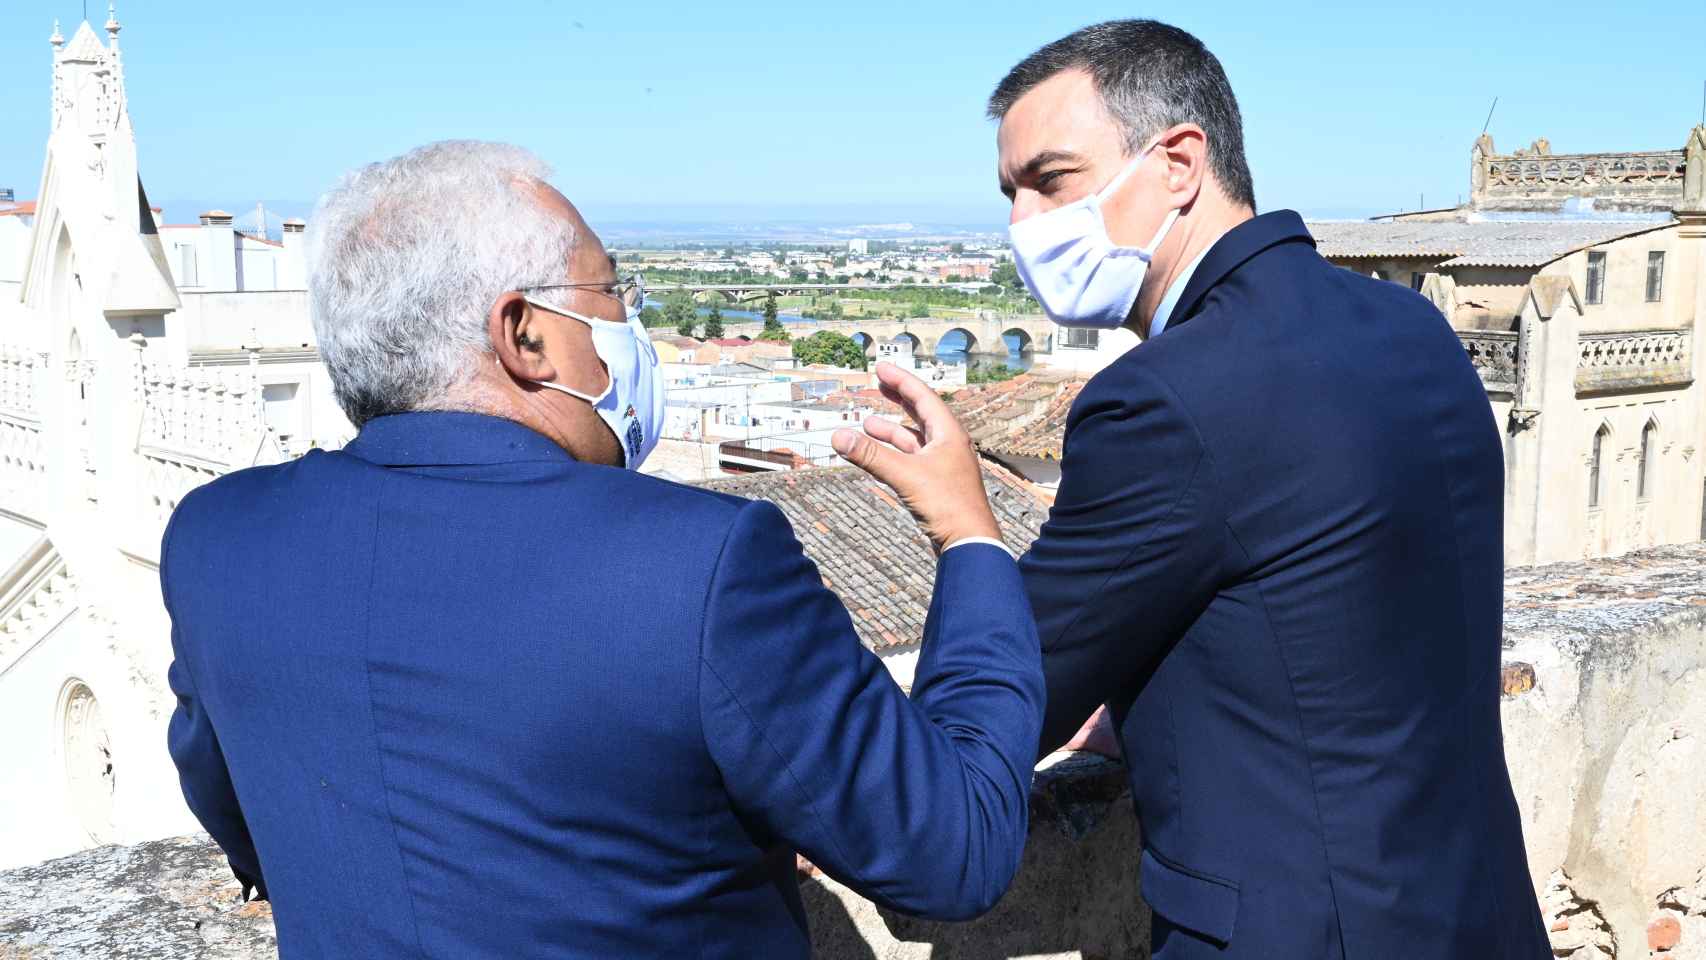 António Costa y Pedro Sánchez conversan entre sí durante la ceremonia de apertura de fronteras tras el coronavirus.